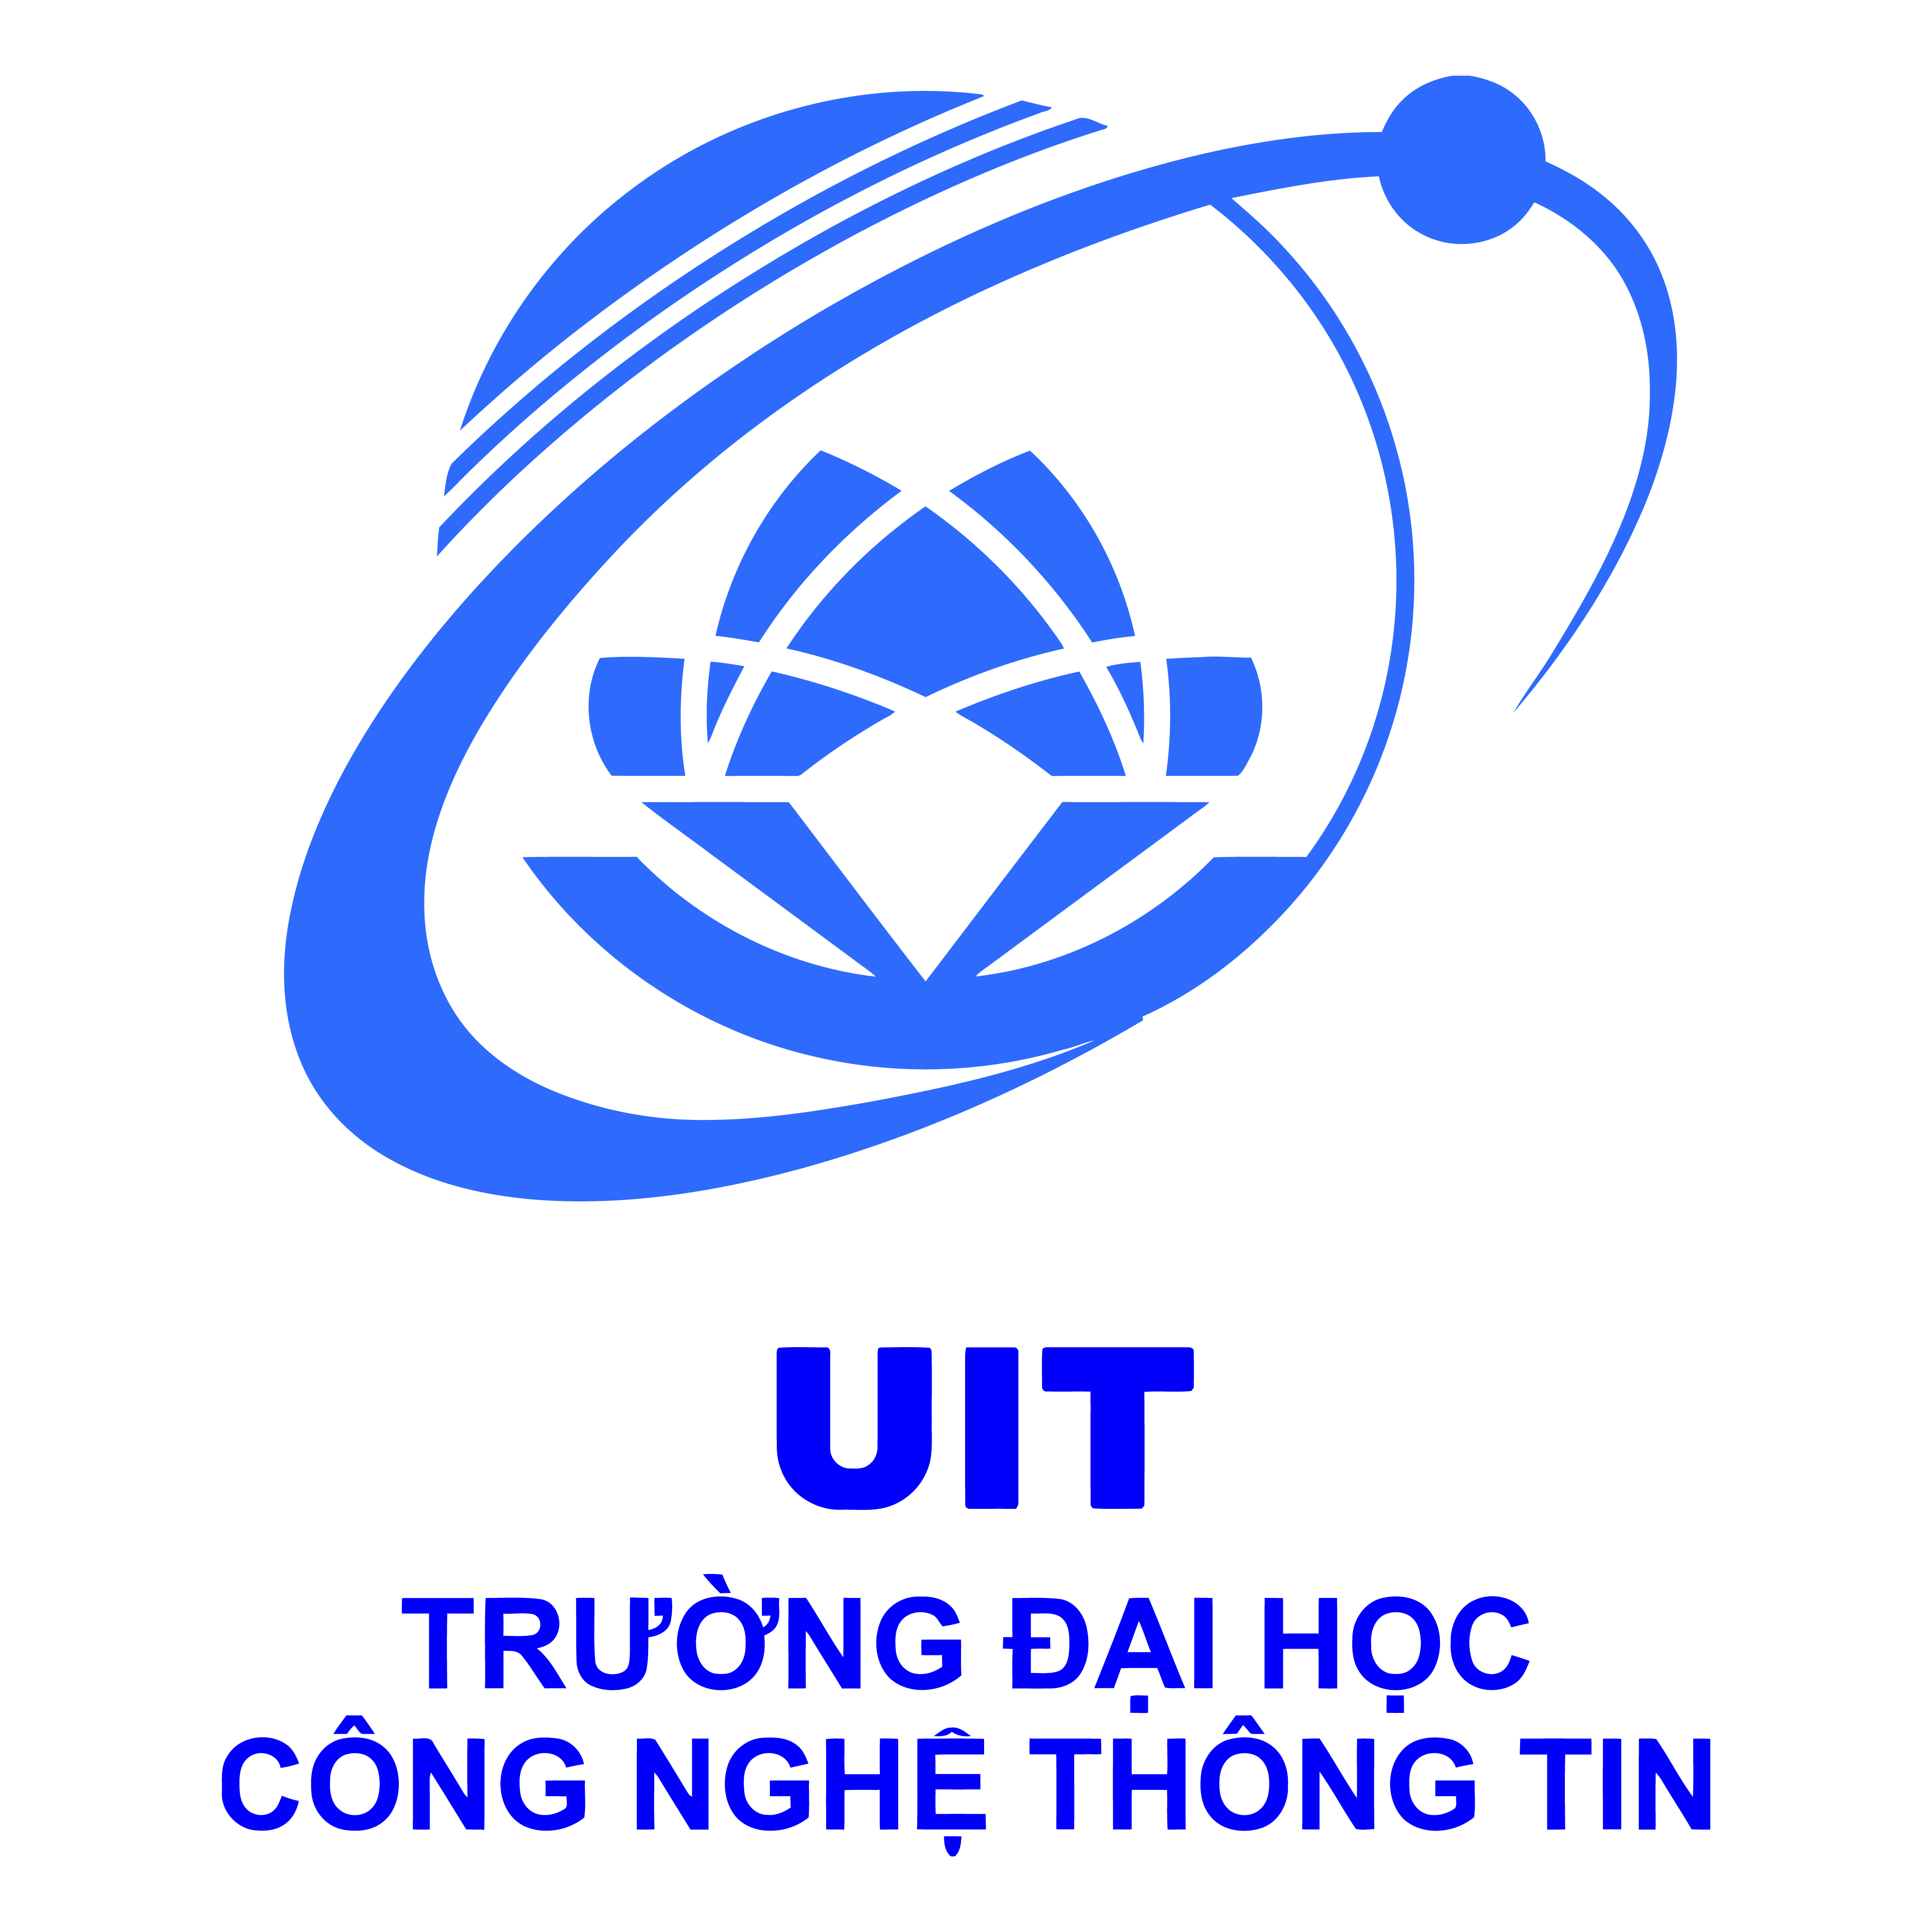 CONG NGHE THONG TIN